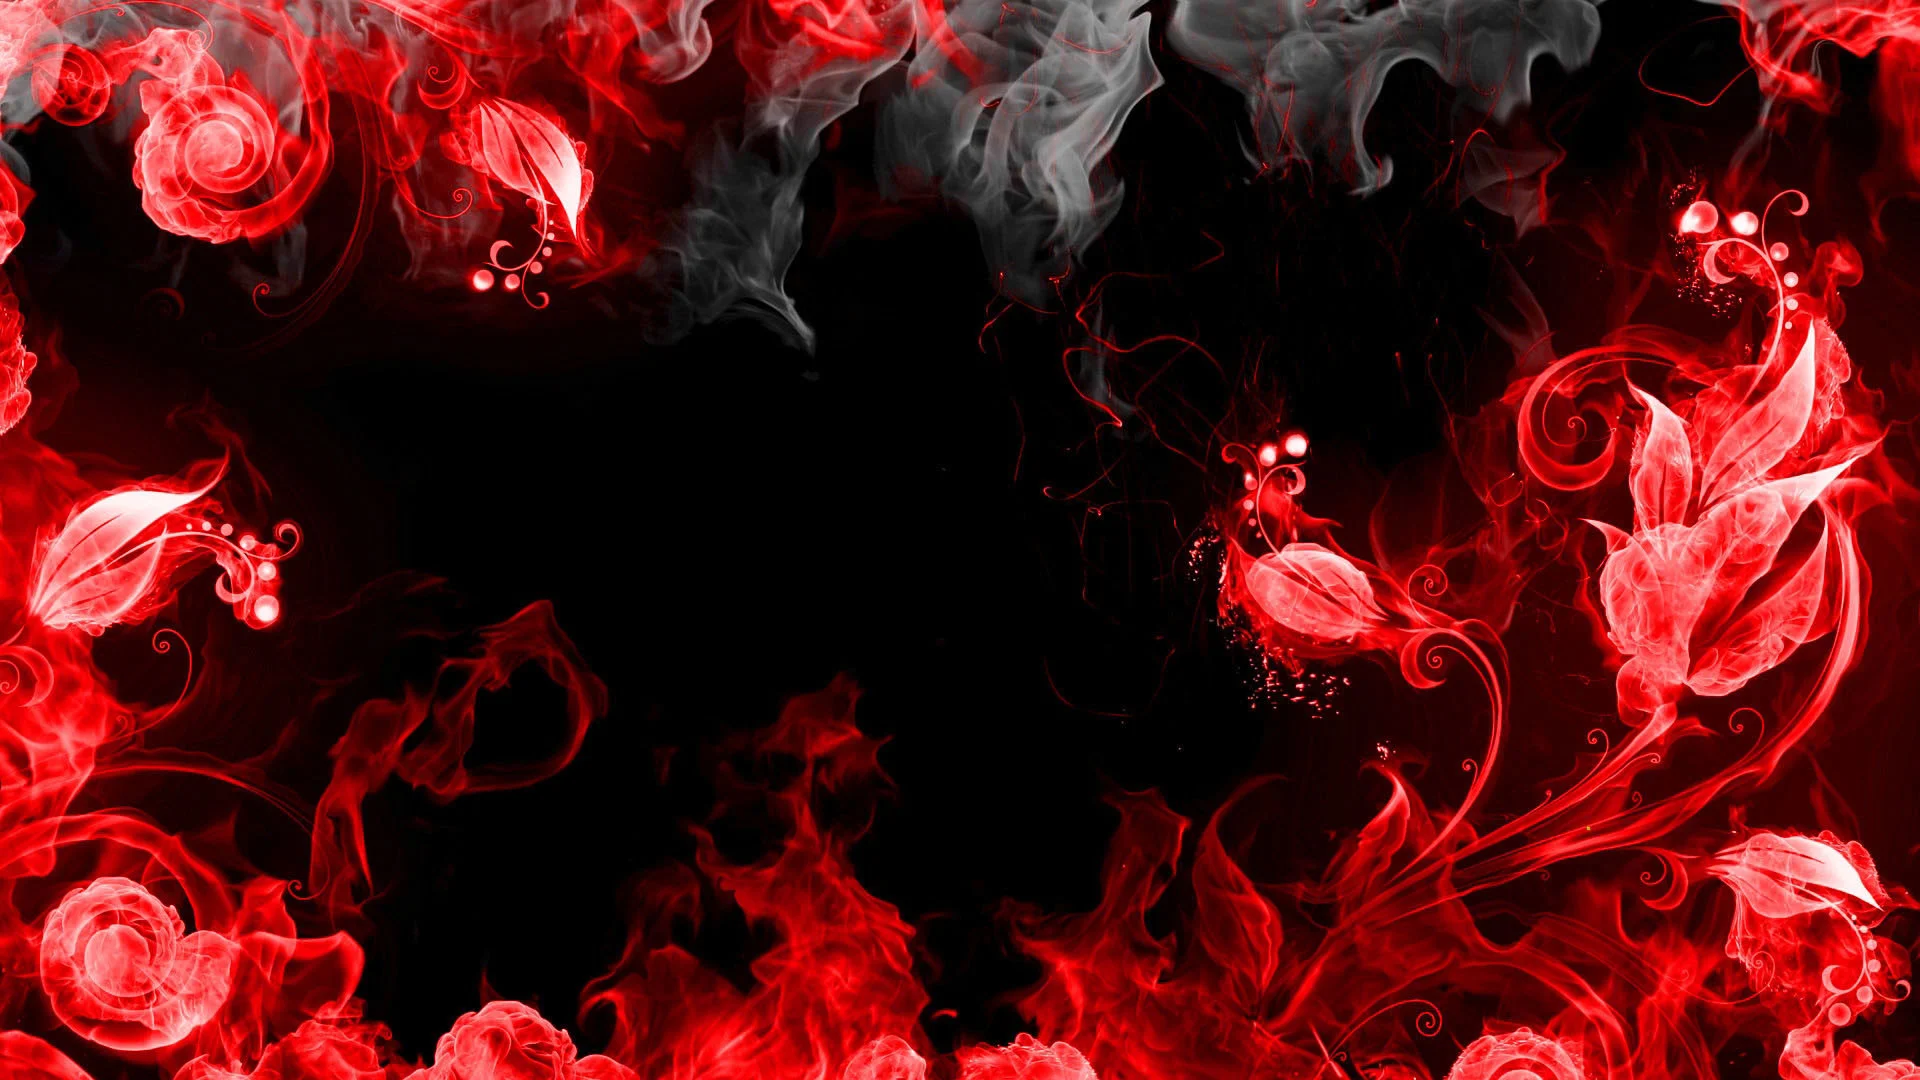 Download Gambar Black and Red Hd Wallpapers for Desktop terbaru 2020